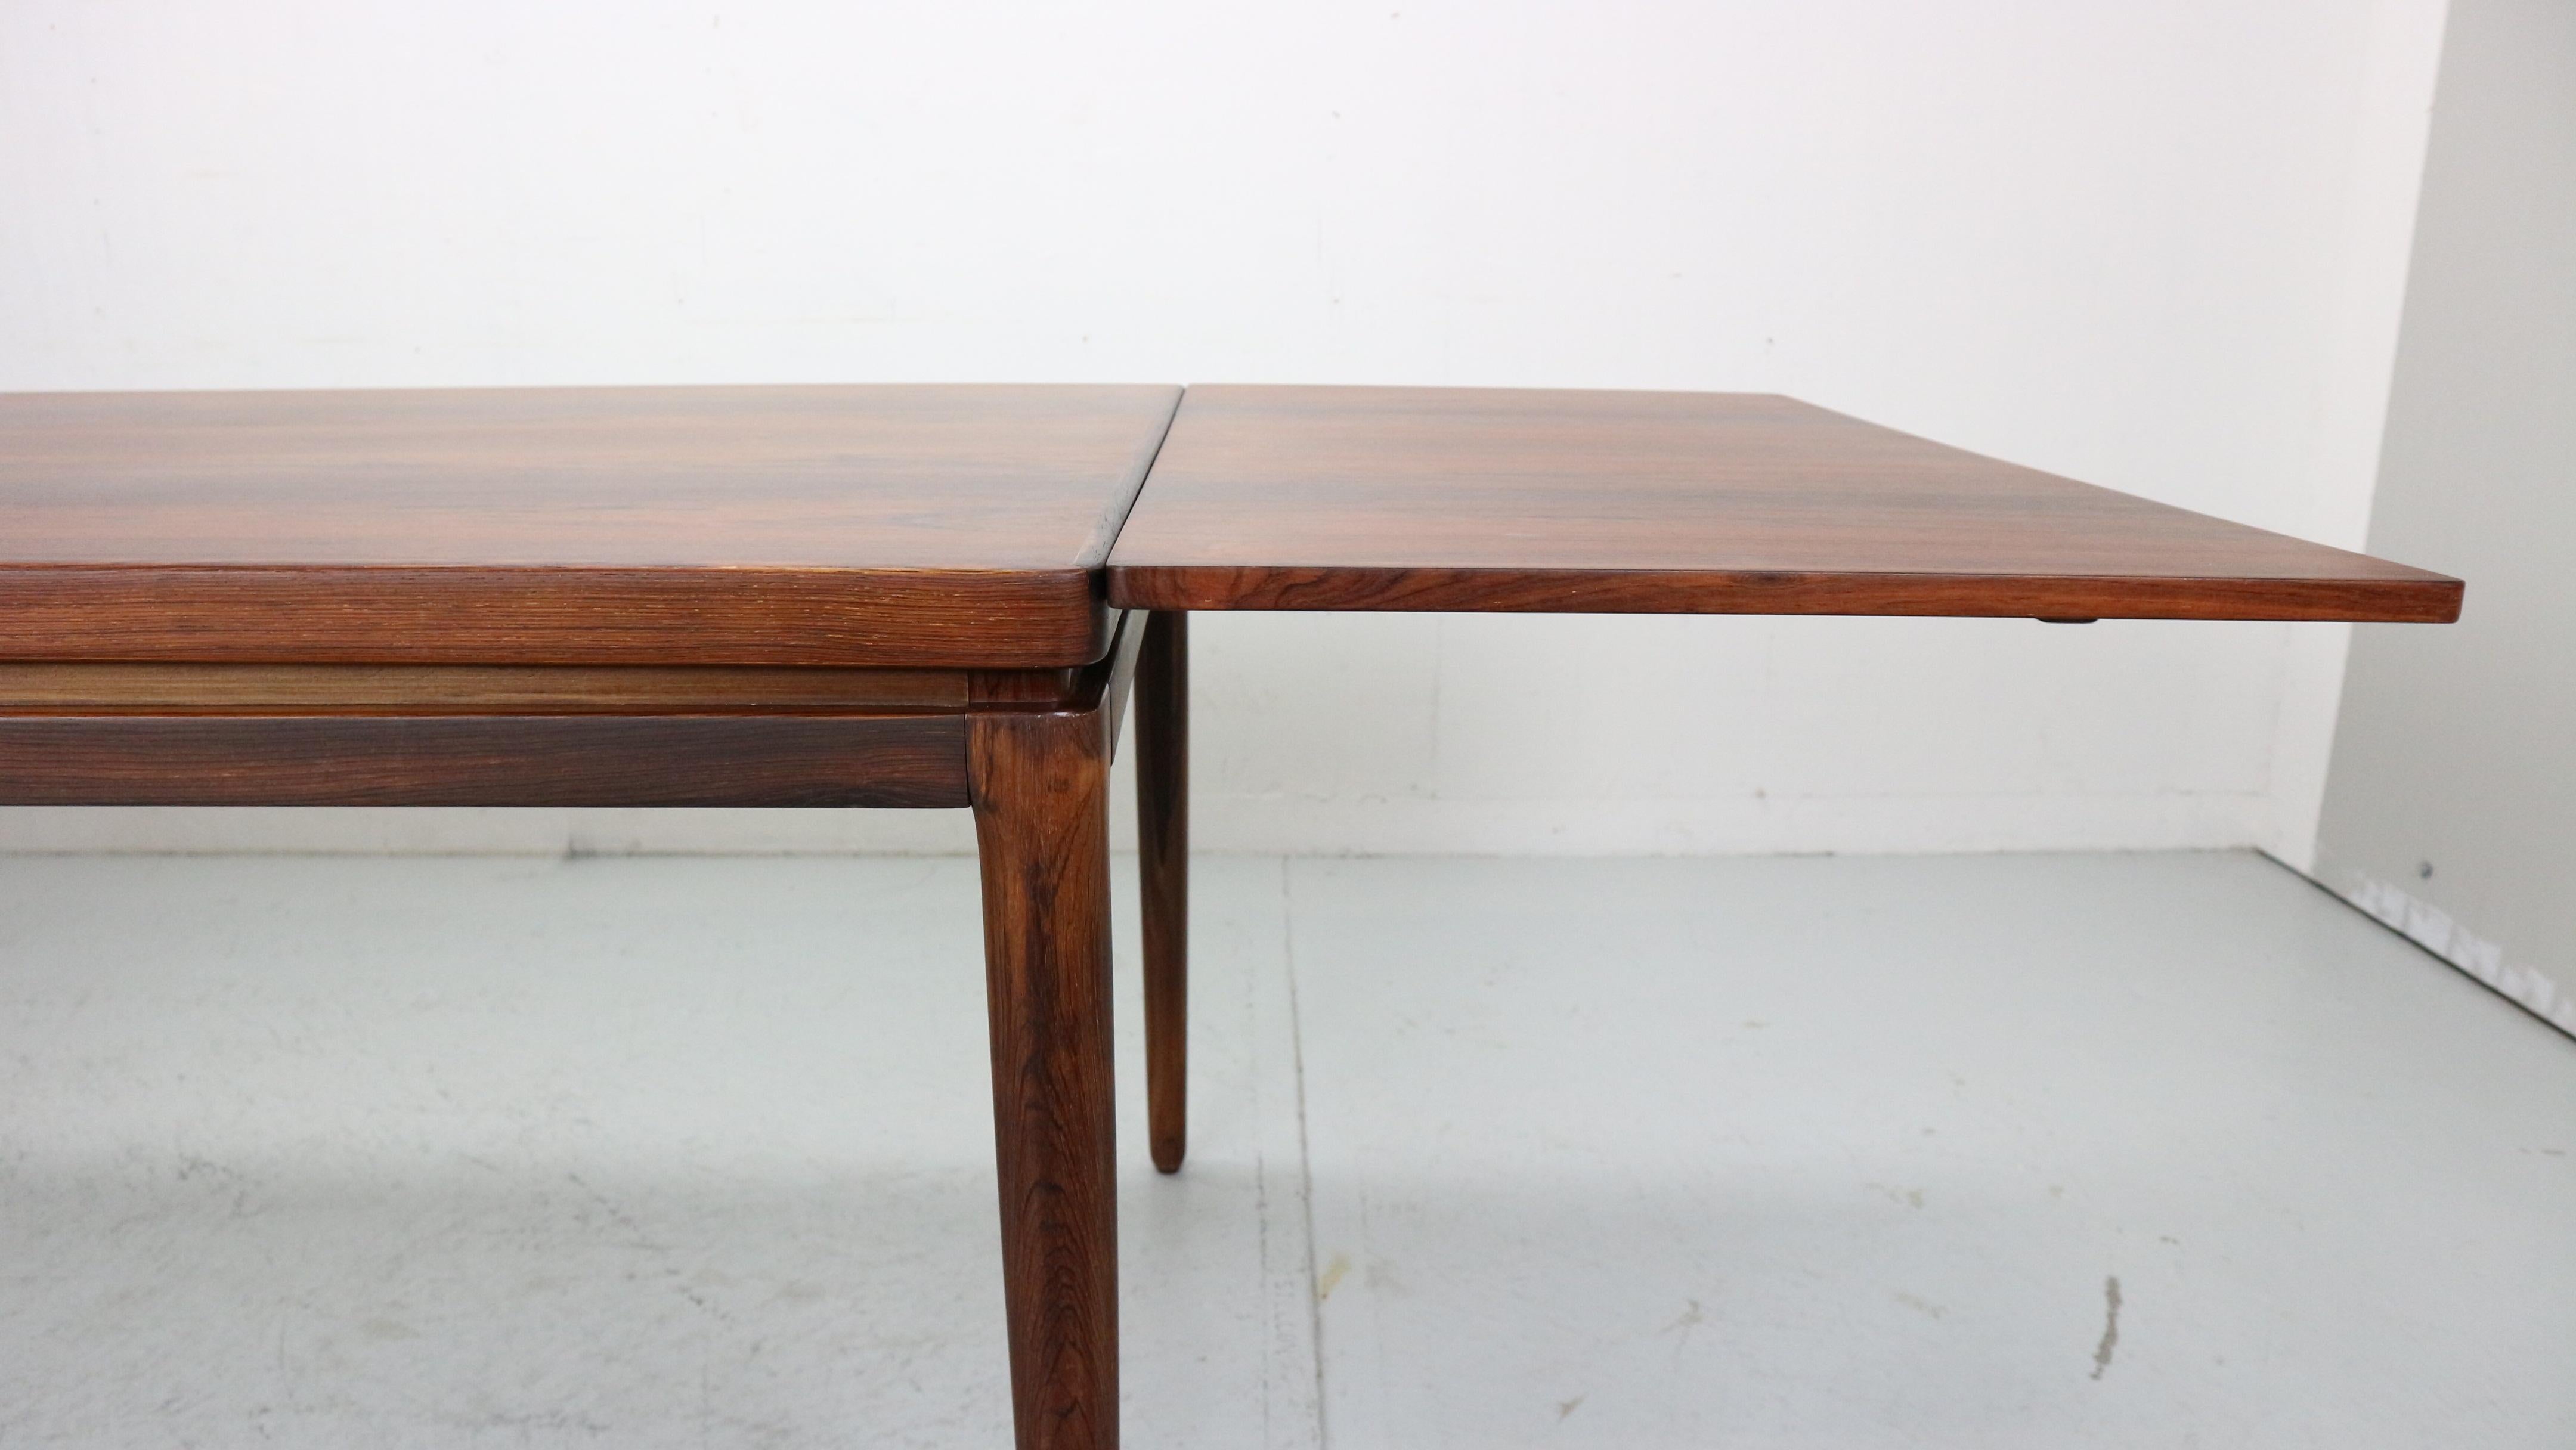 Wood 10 p. J. Andersen dining table, 1964 by Chr. Linnebergs, Denmark. Model 16